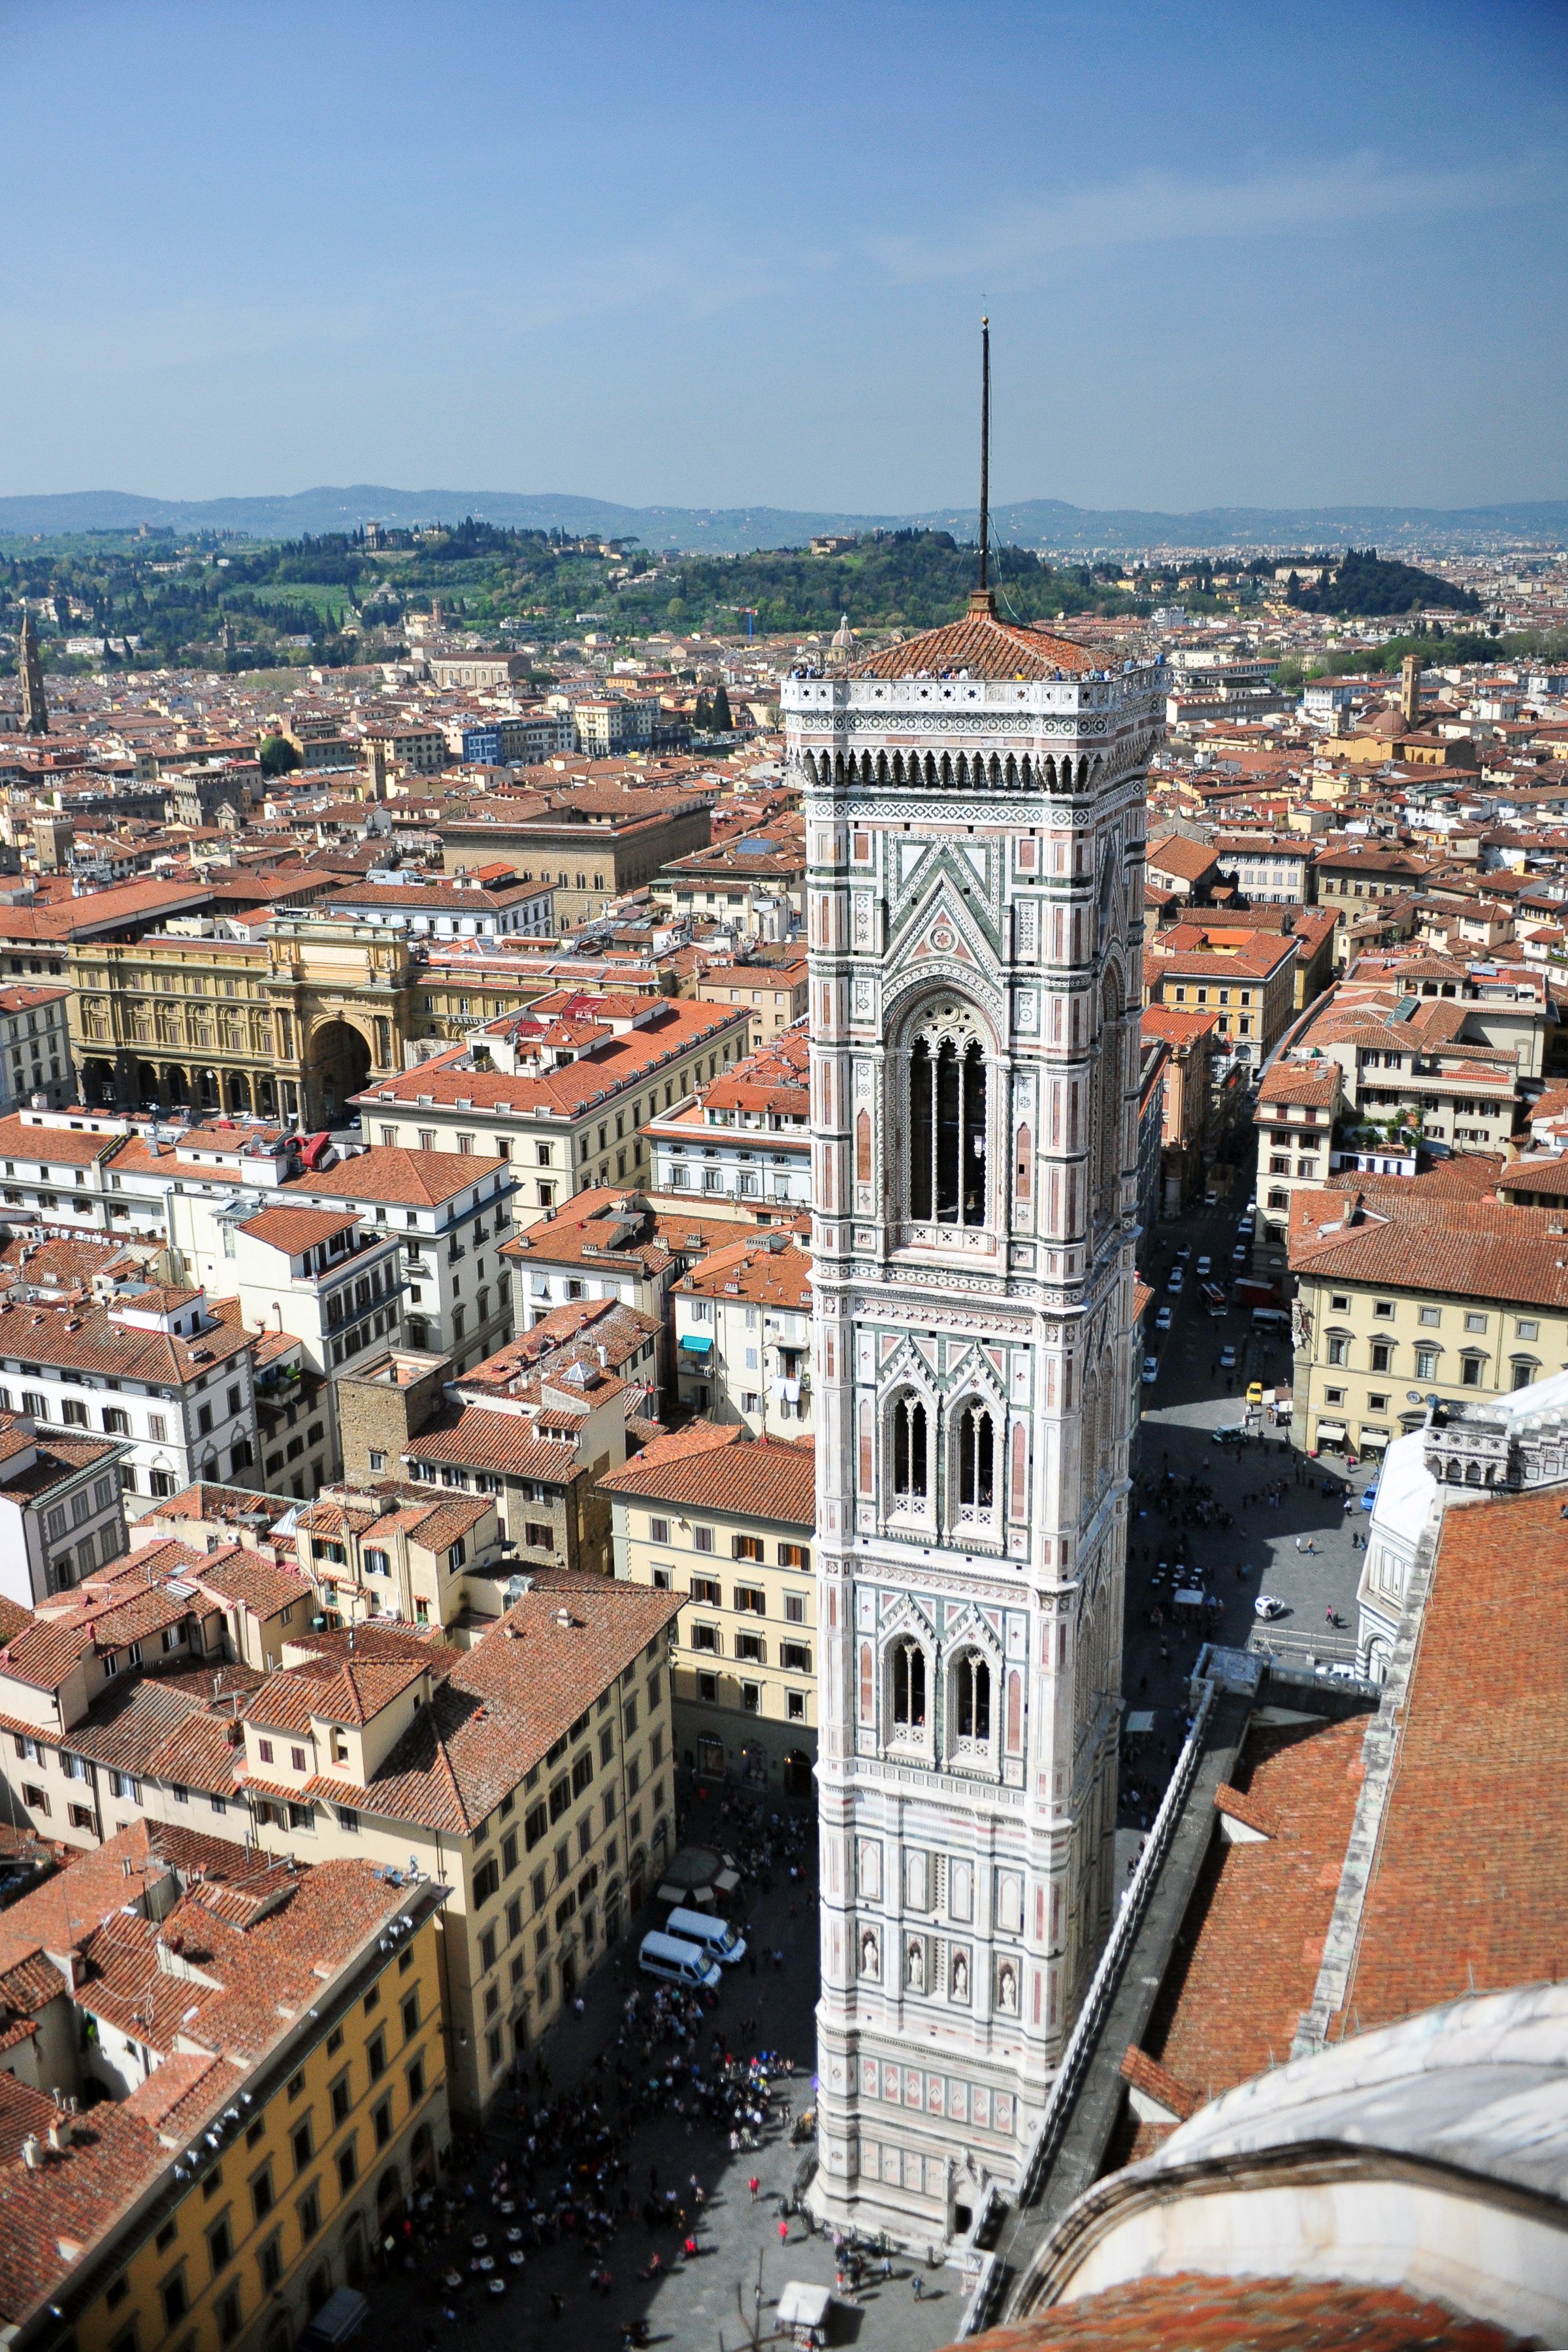 Giotto's bell tower on Santa Maria del Fiore